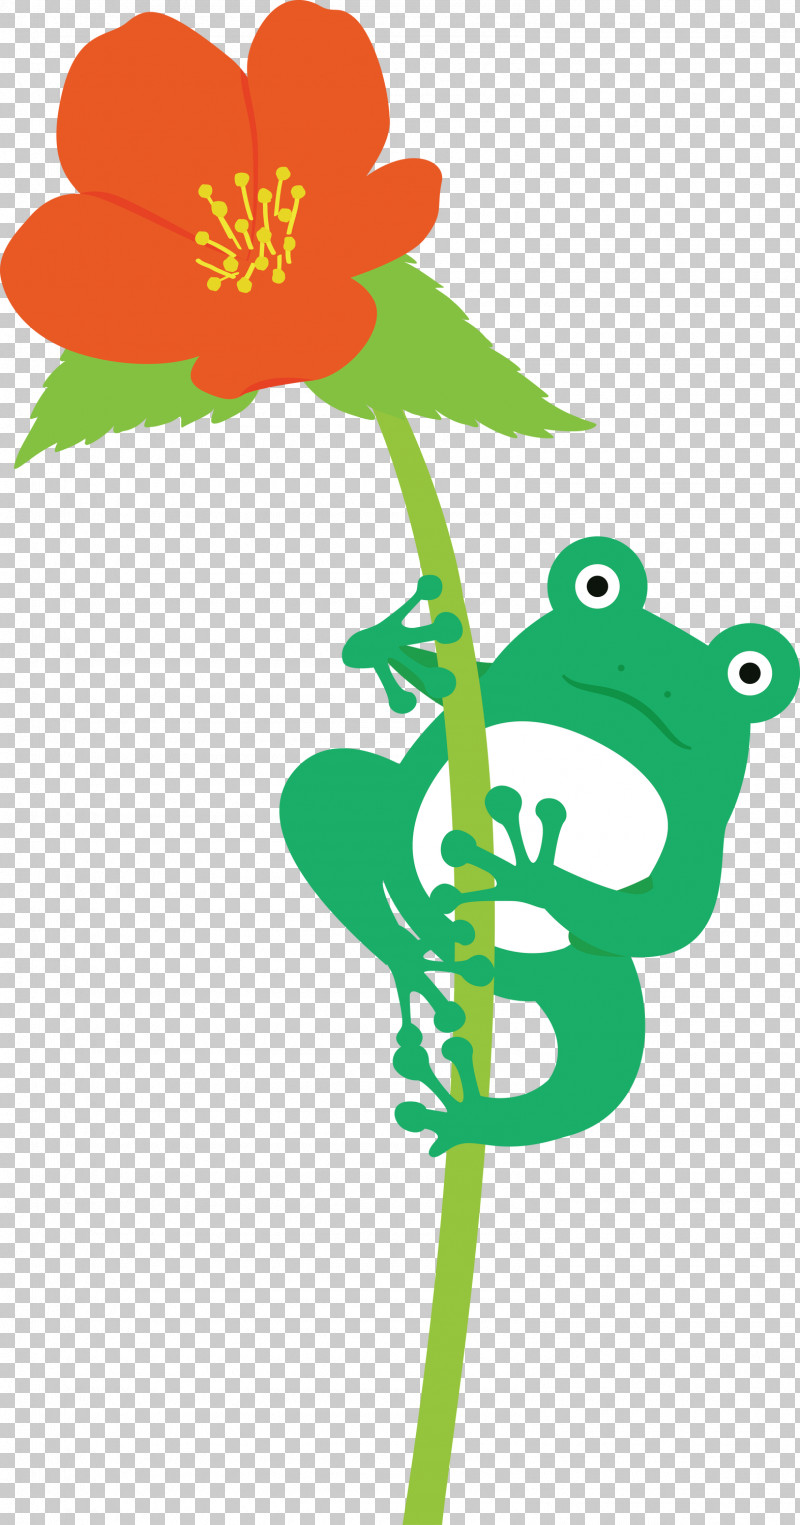 Flower Plant Stem Leaf Petal Tree Frog PNG, Clipart, Cartoon, Flower, Frog, Green, Leaf Free PNG Download